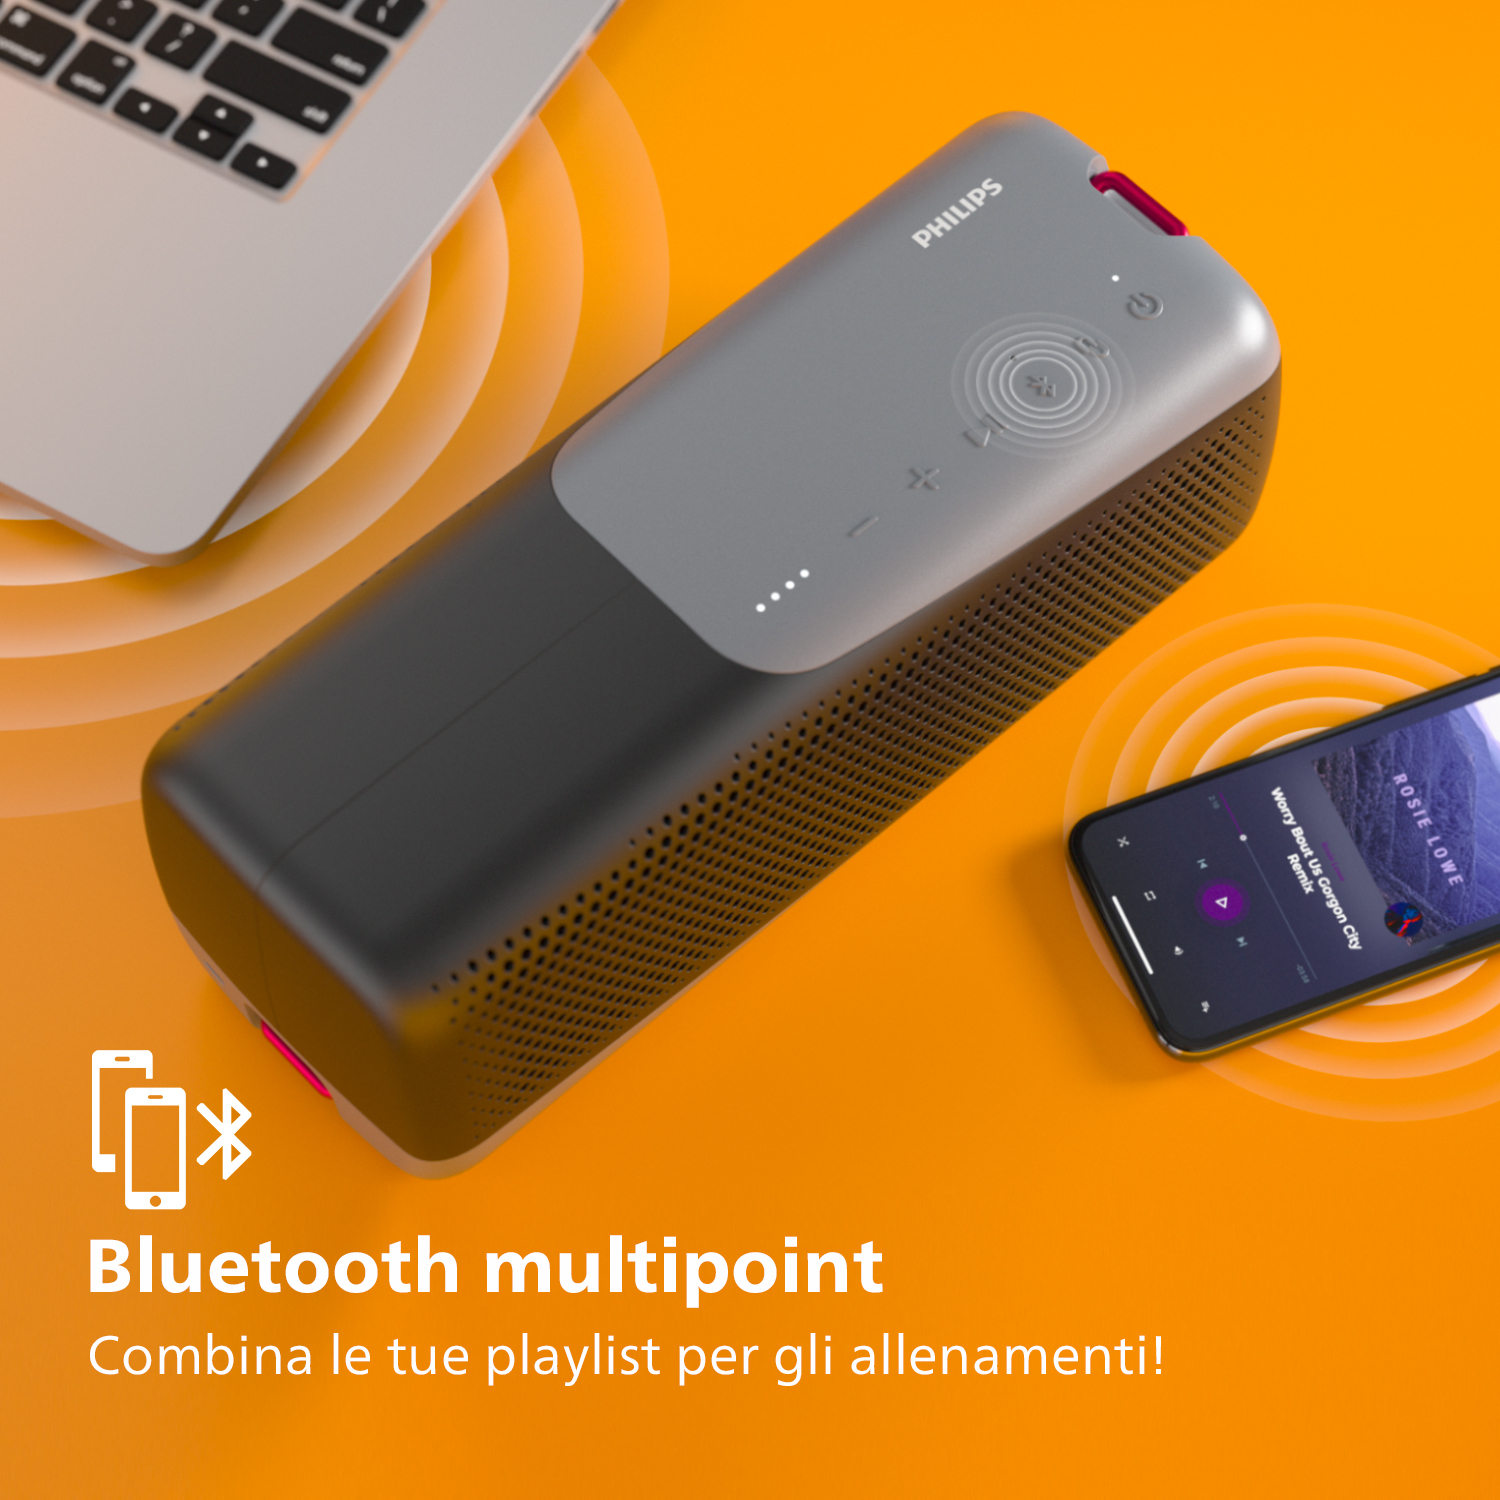 Philips TAS4807B Wireless speaker sport, Altoparlante portatile, Bluetooth Multipoint, IP67, Fino a 12 ore, (Nero) [TAS4807B/00]